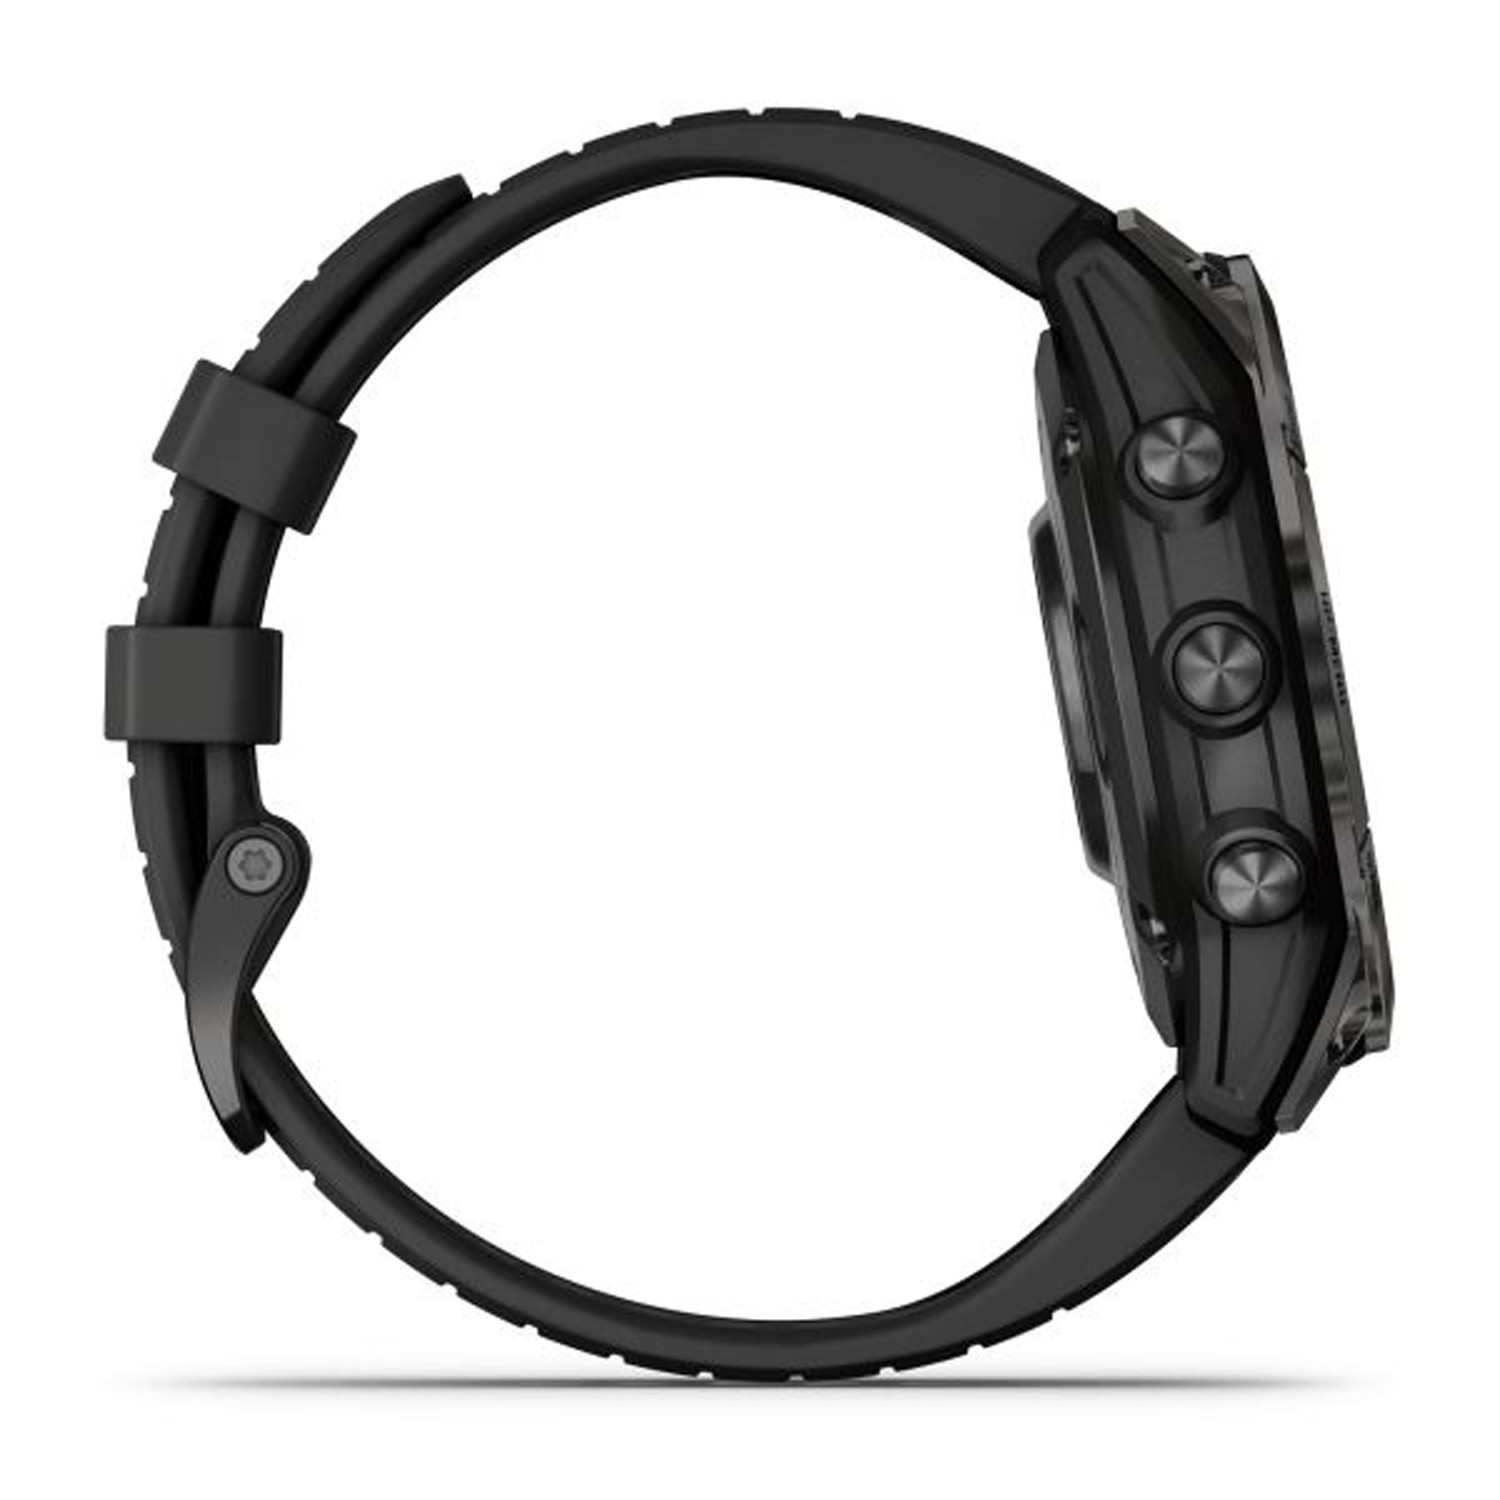 Montre Garmin Fenix 7 Pro Sapphire Solar Edition
Titane avec revêtement en Carbon Gray DLC et bracelet noir